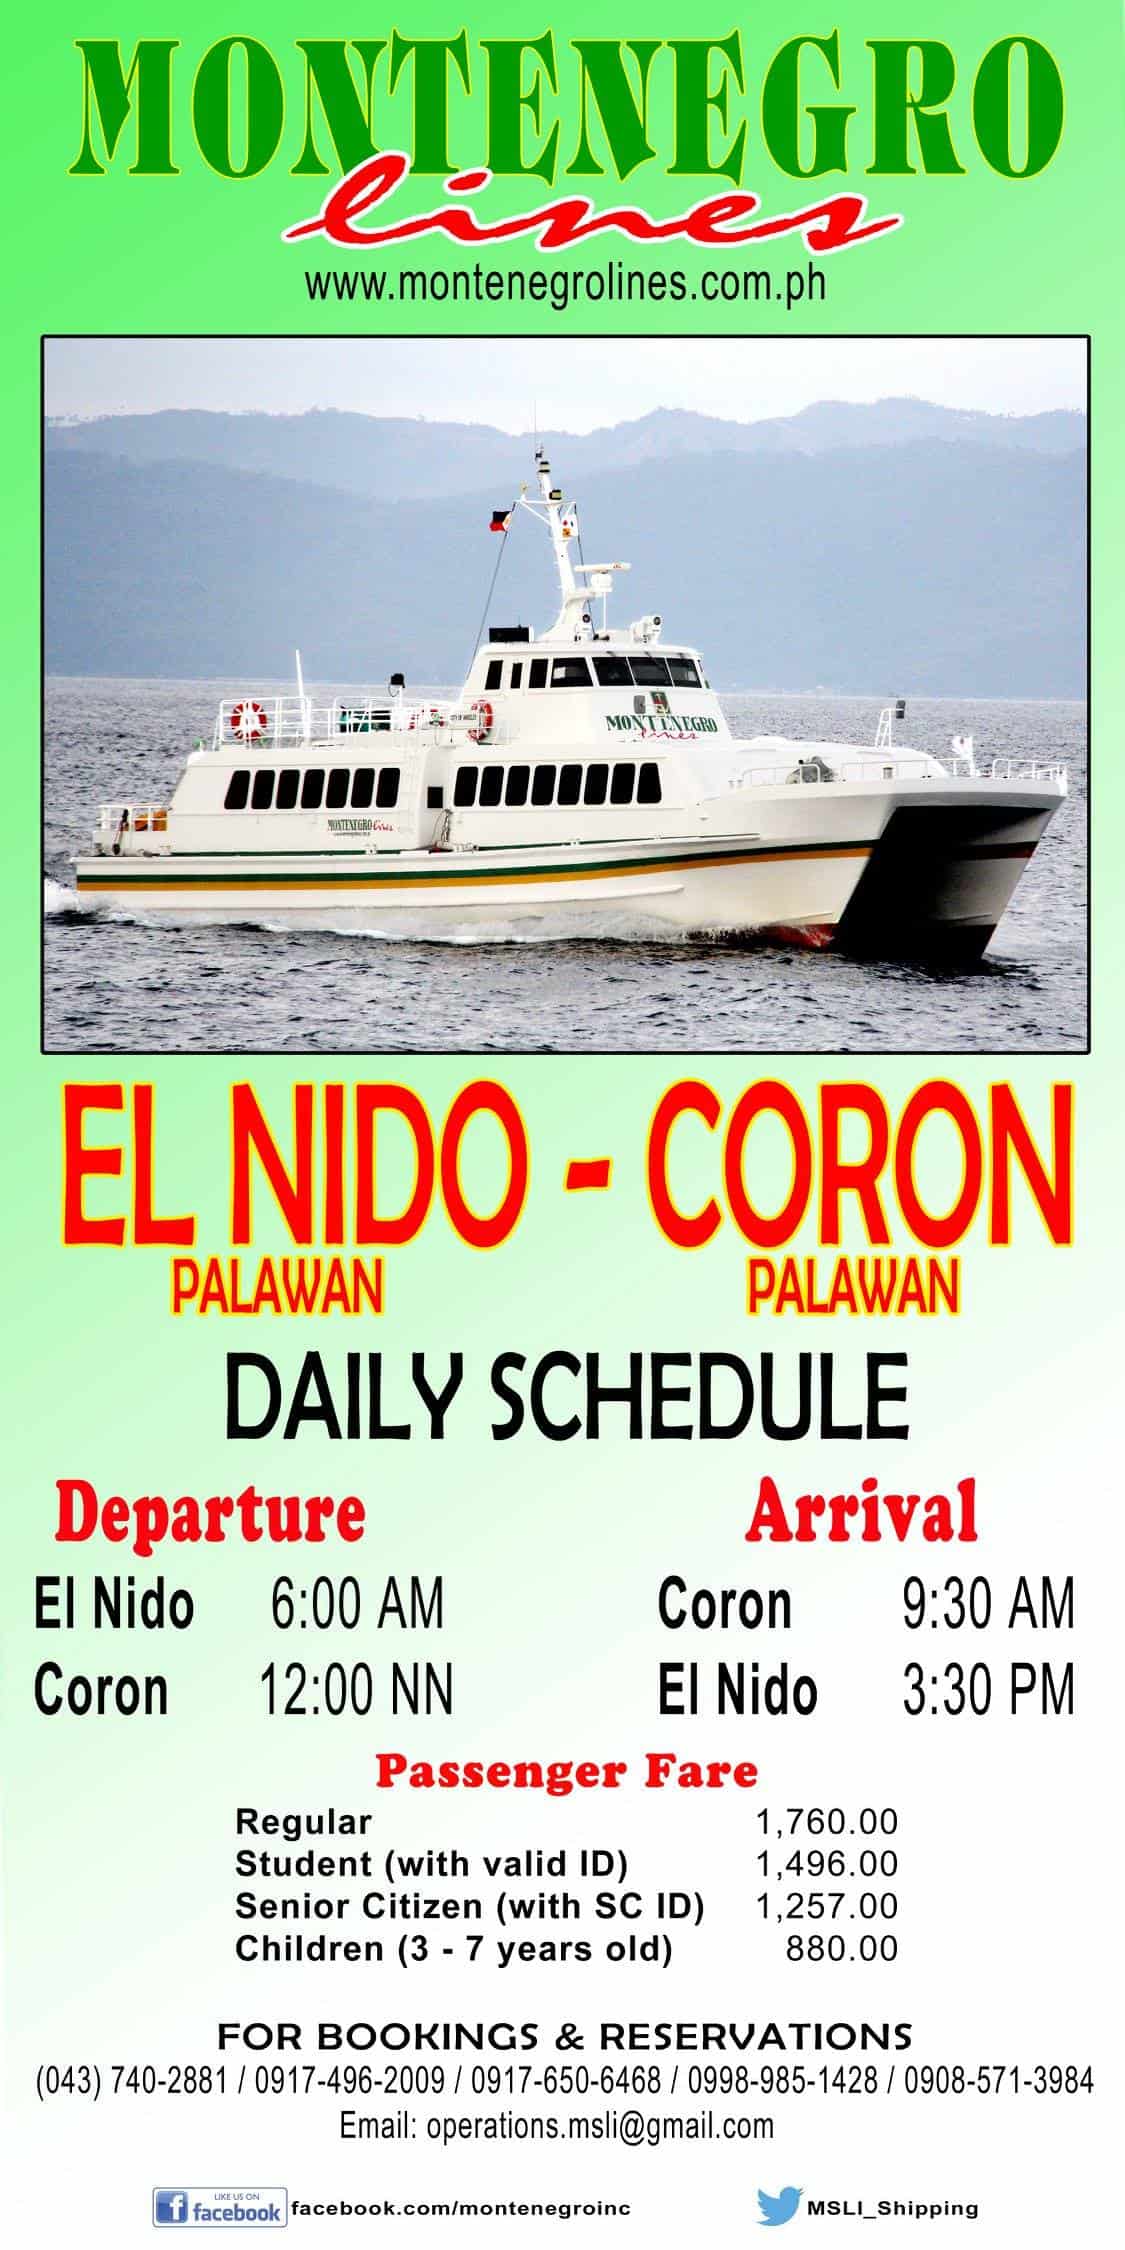 Coron呼叫El Nido快速飞船